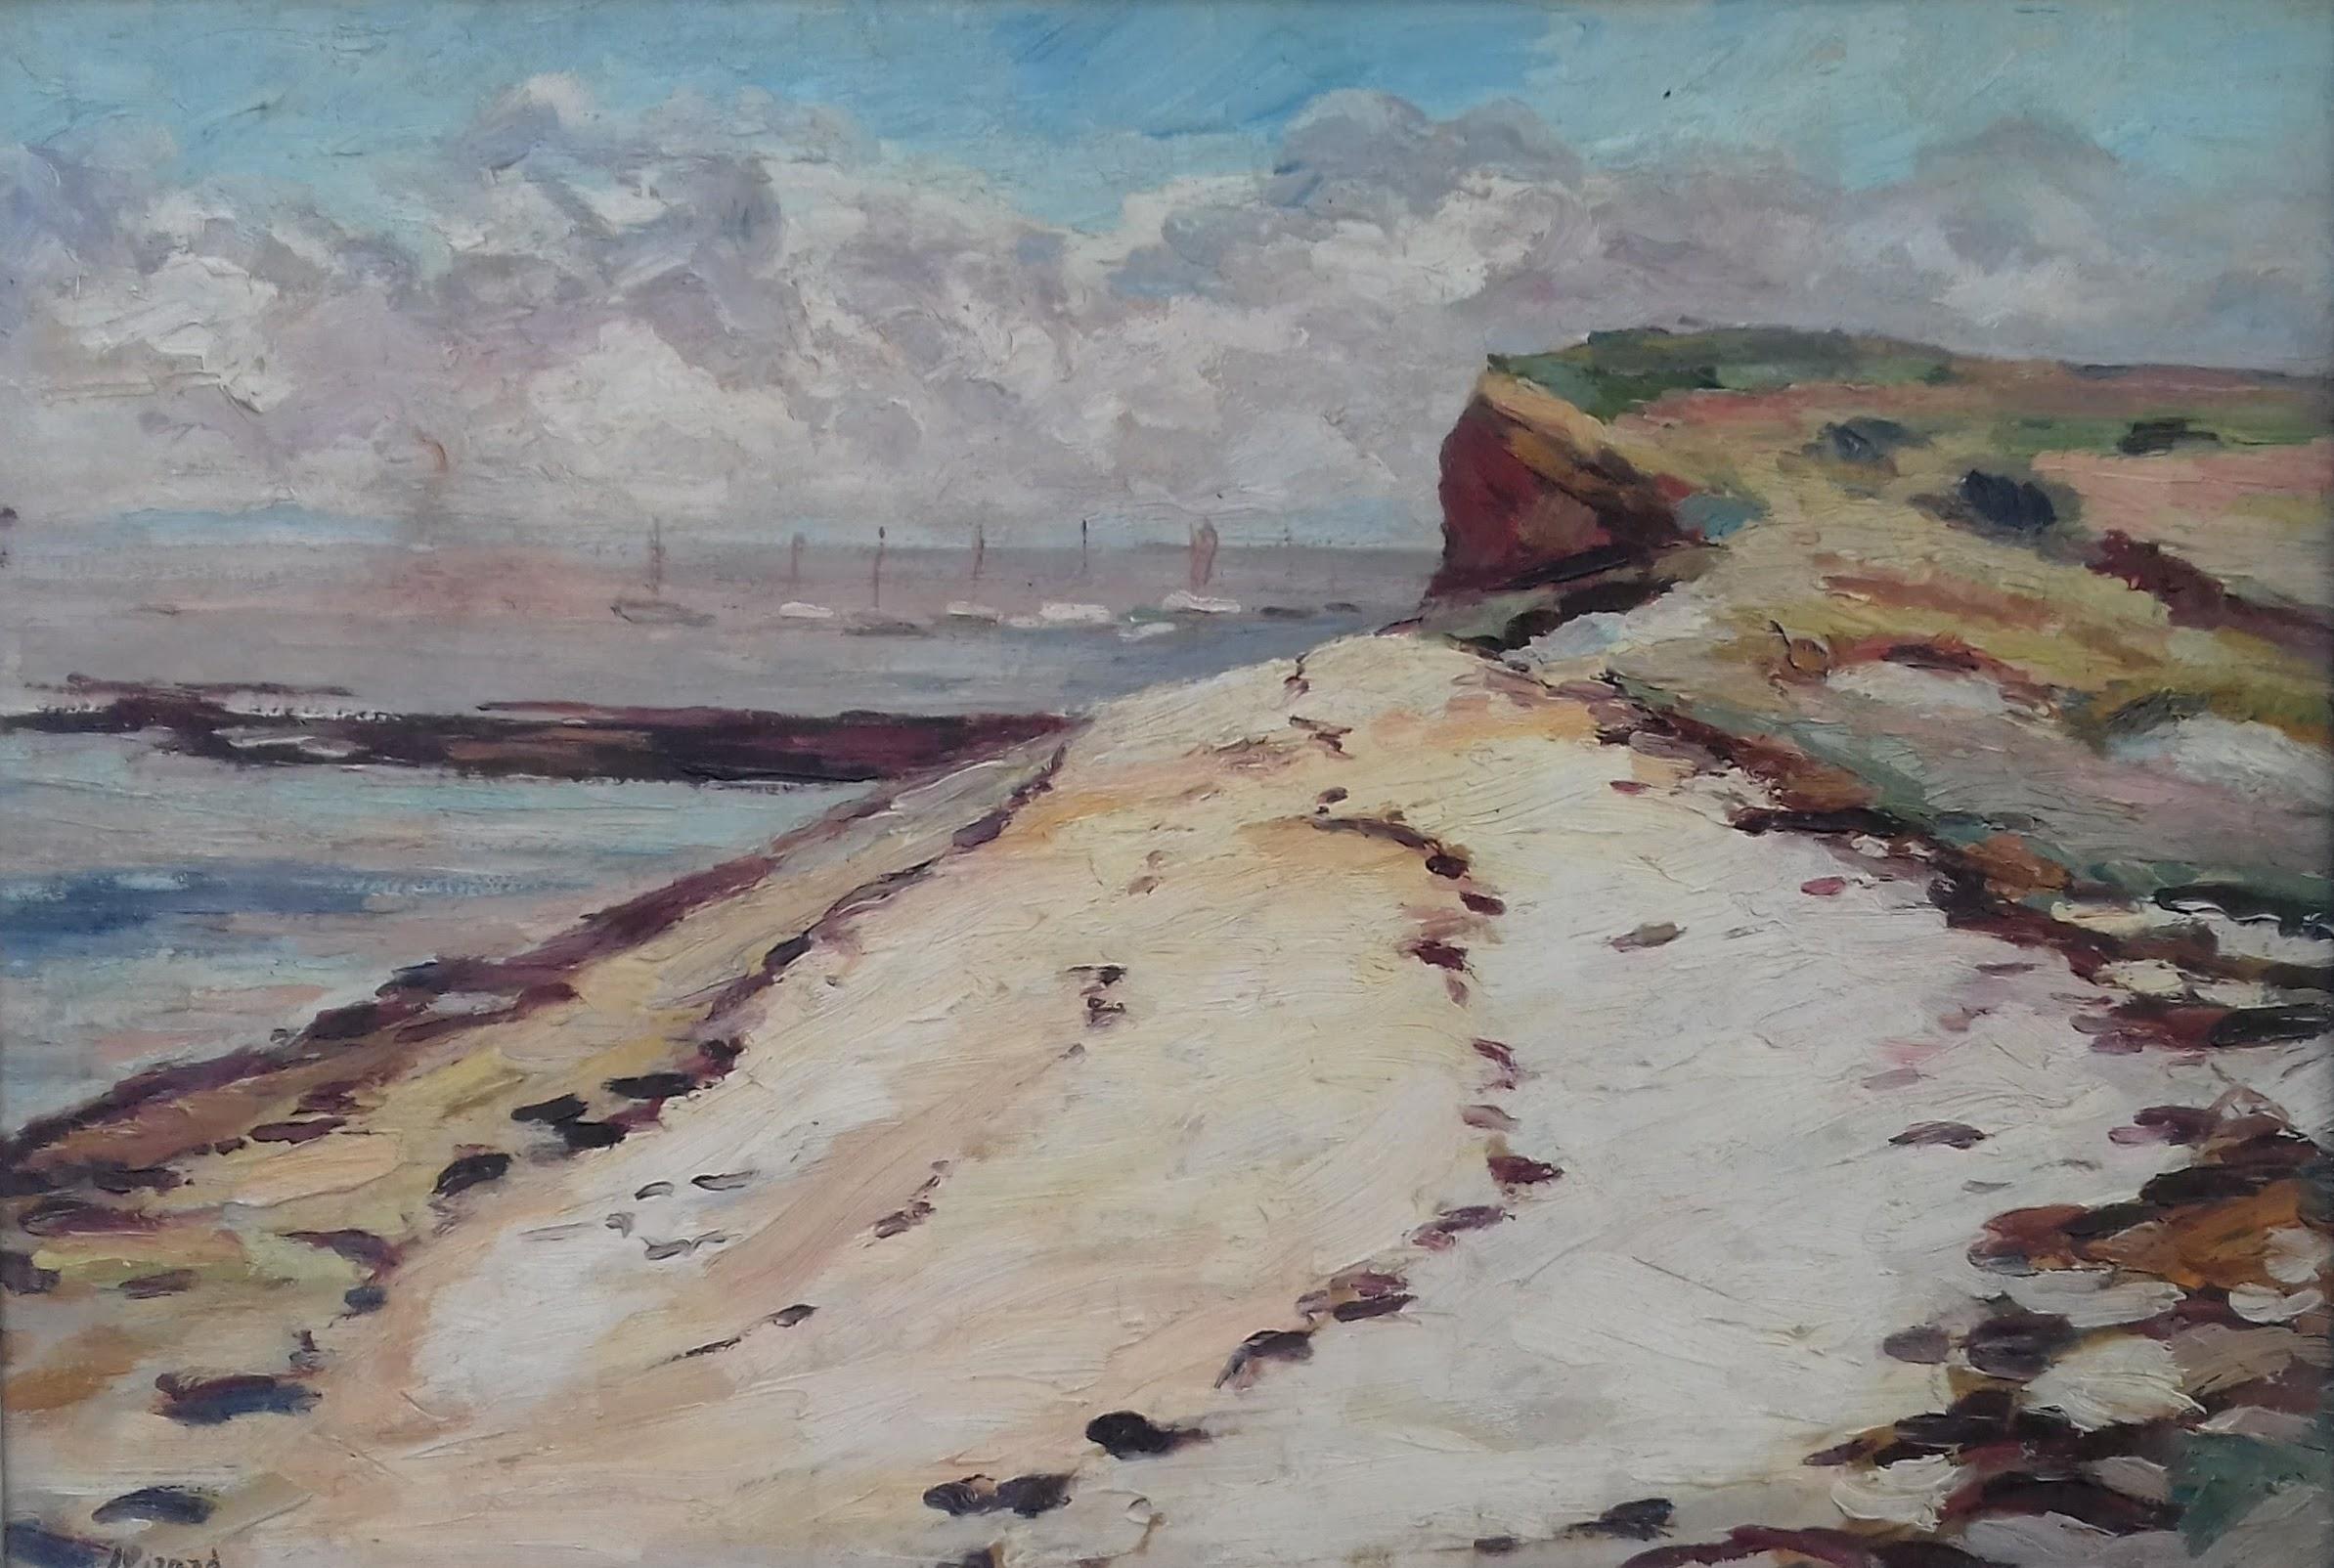 Landscape Painting Louis Auguste Girard - Peinture à l'huile impressionniste - Paysage aquatique:: mer et bateaux:: sud de la France